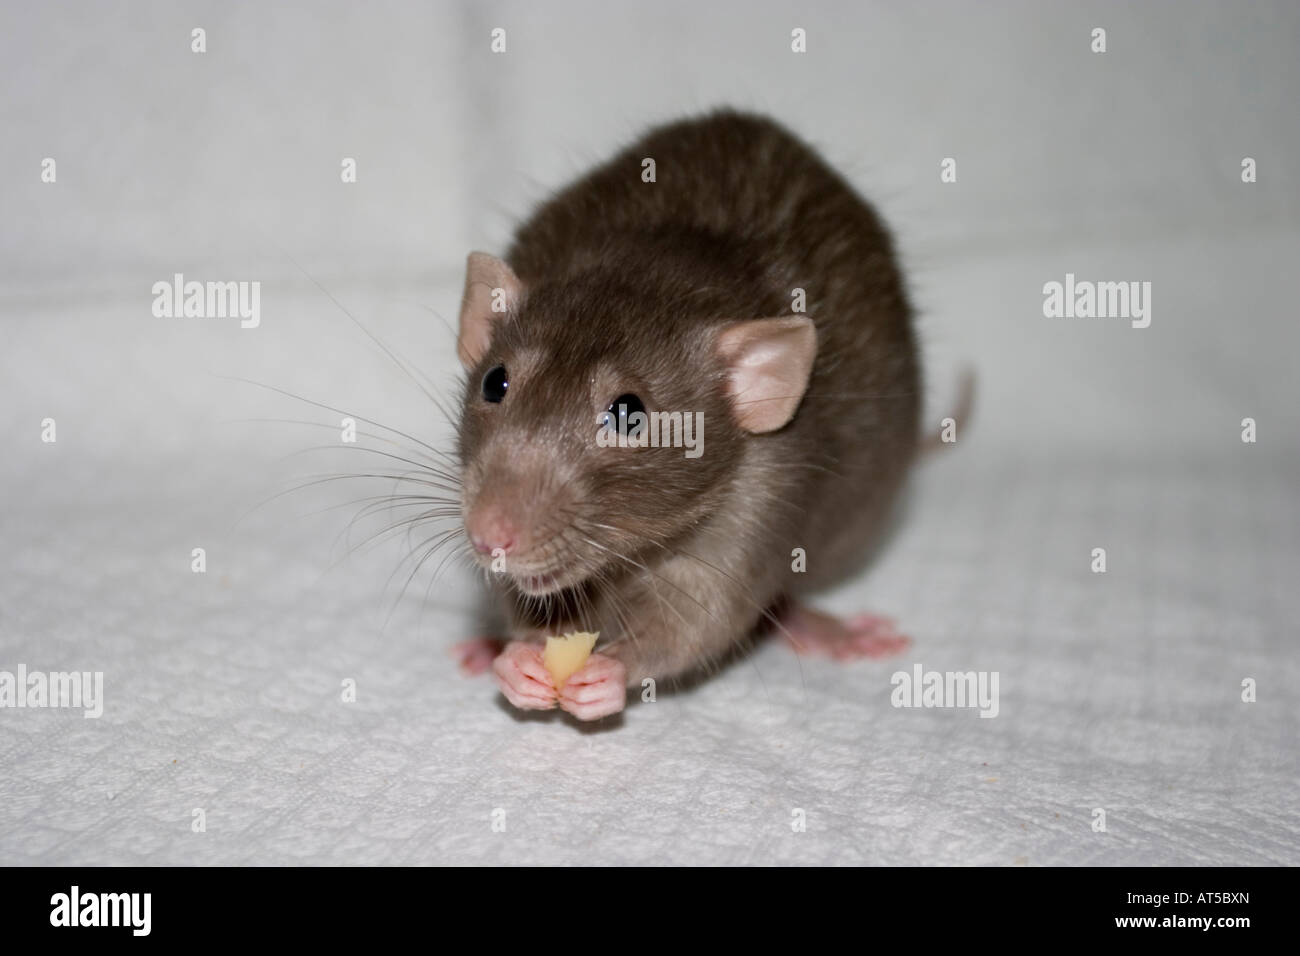 rat dambo pet Dumbo Stock Photo